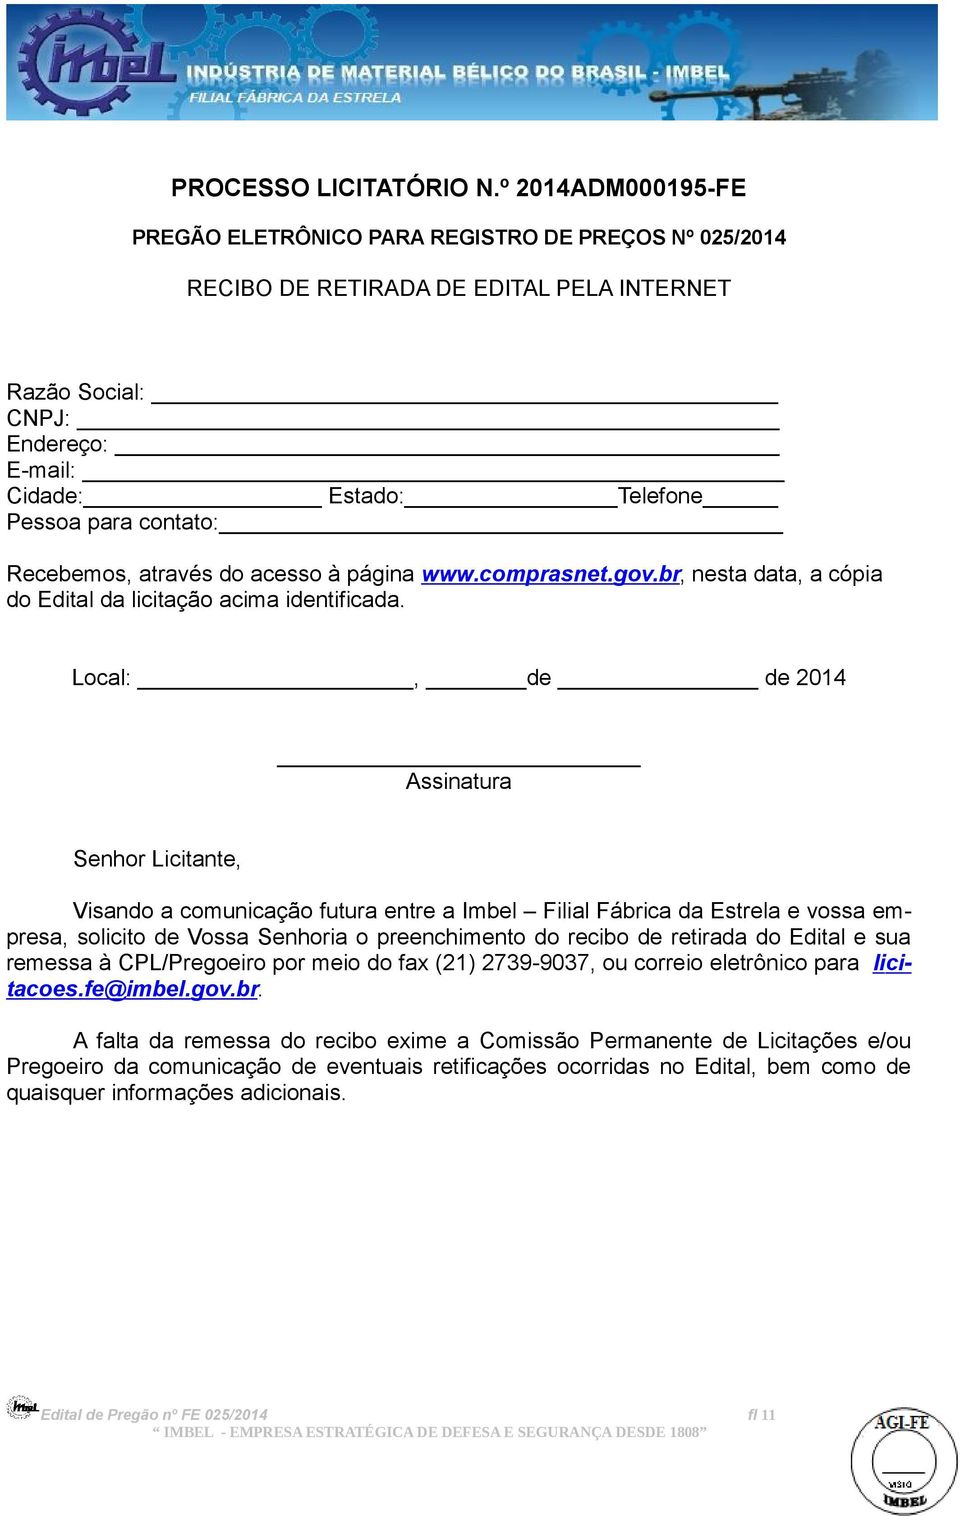 Recebemos, através do acesso à página www.comprasnet.gov.br, nesta data, a cópia do Edital da licitação acima identificada.